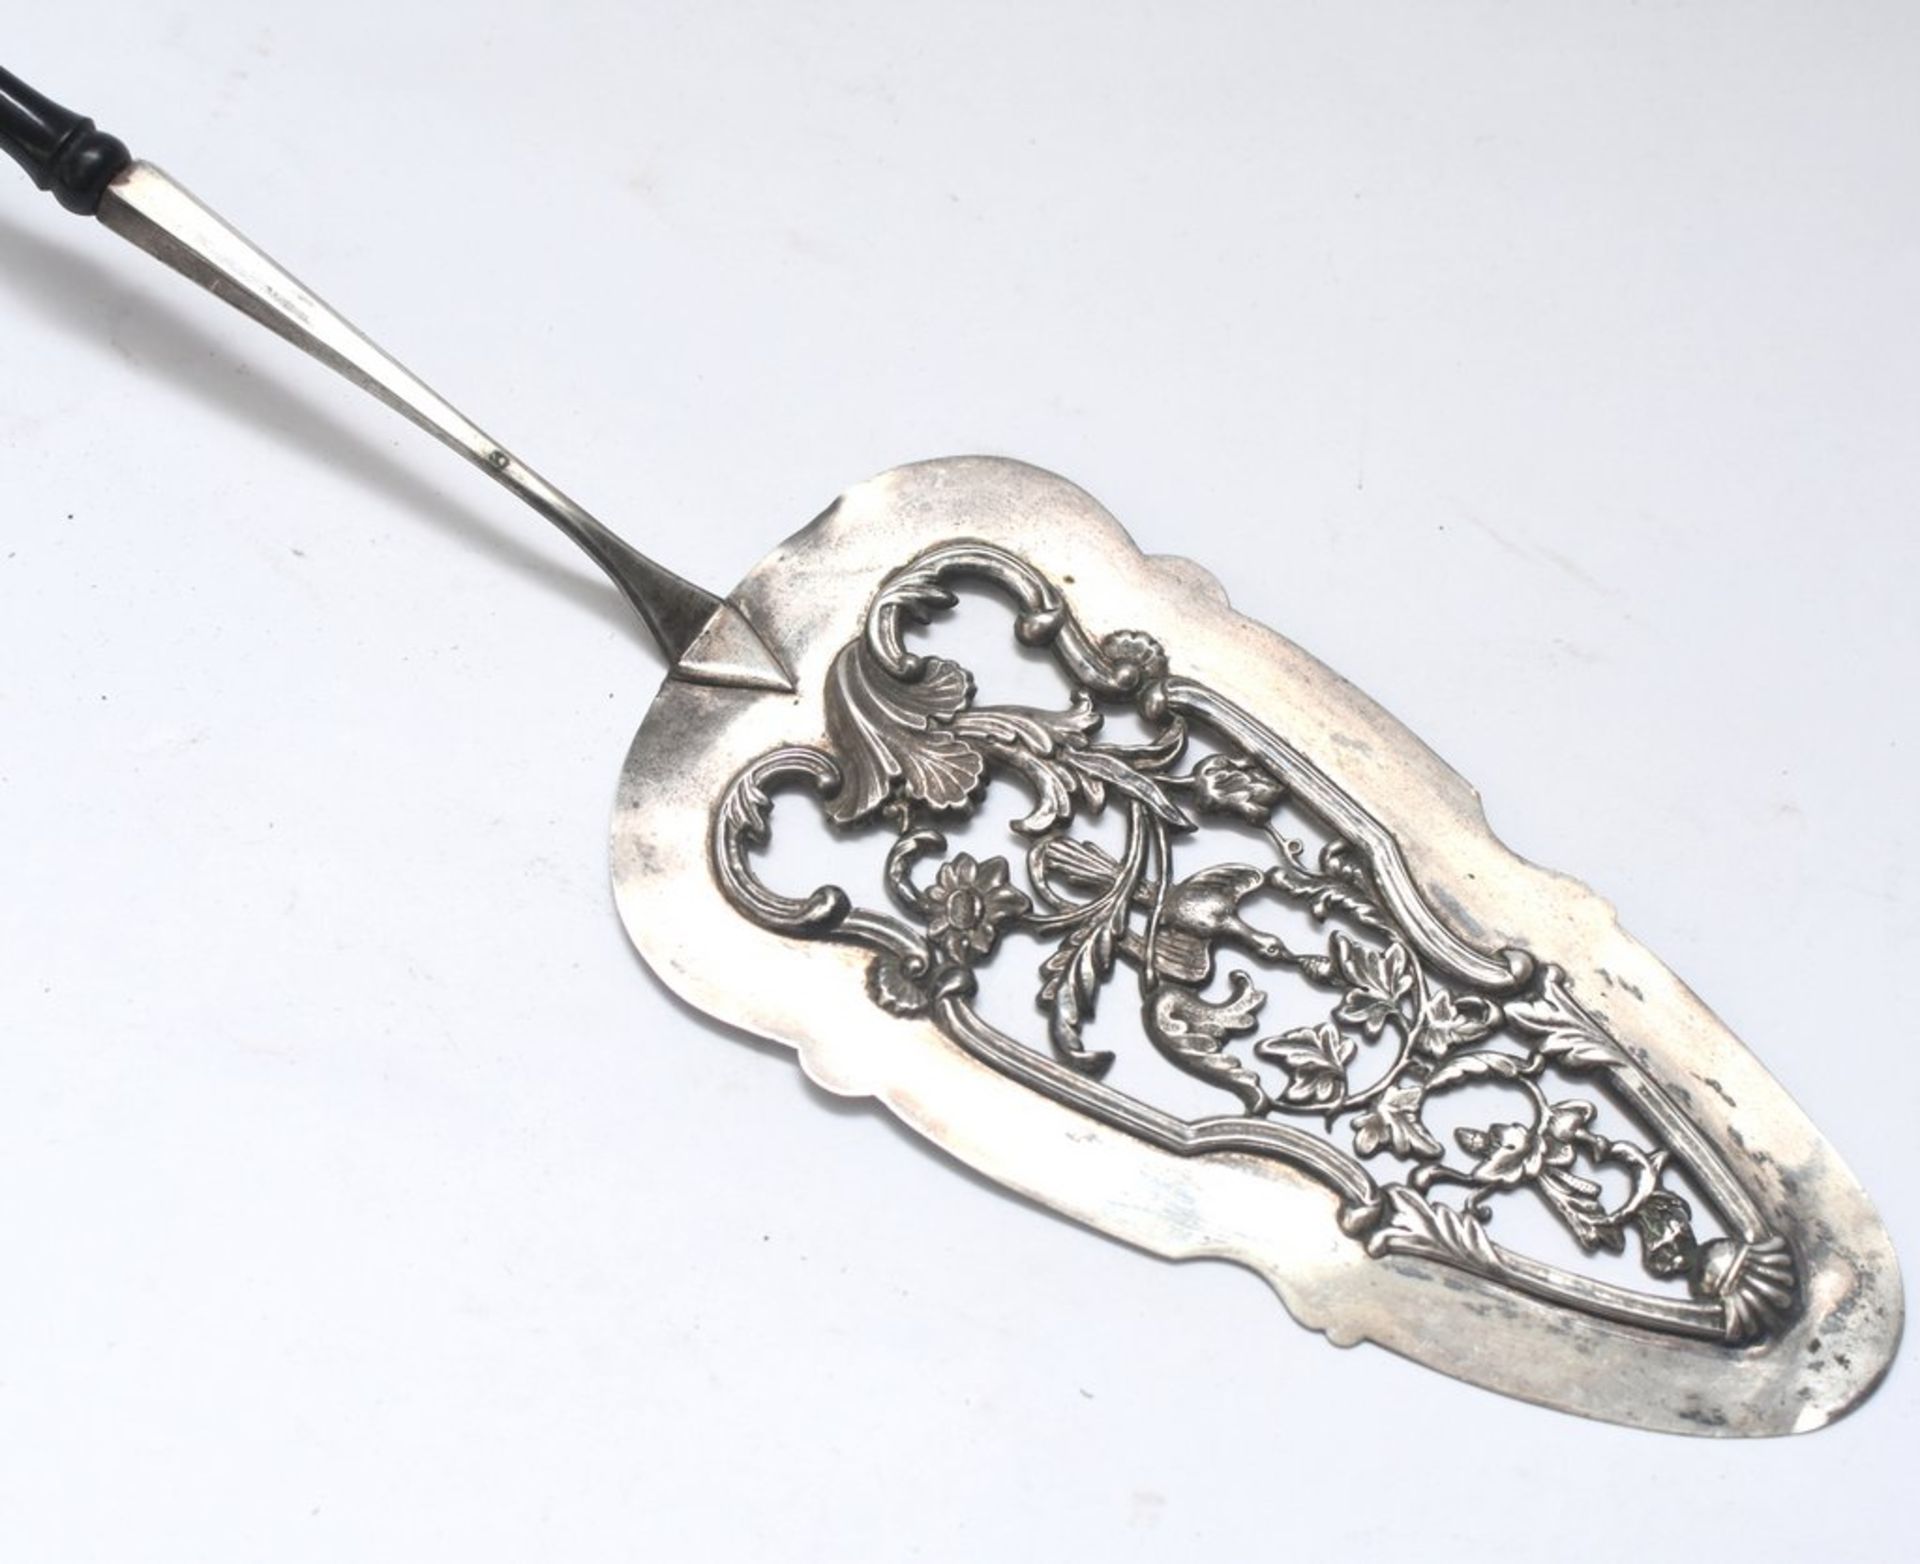 Barocke Kuchenschaufel, Silber geprüft, Punze unleserlich, Schaufel mit durchbrochenem Blumendekor